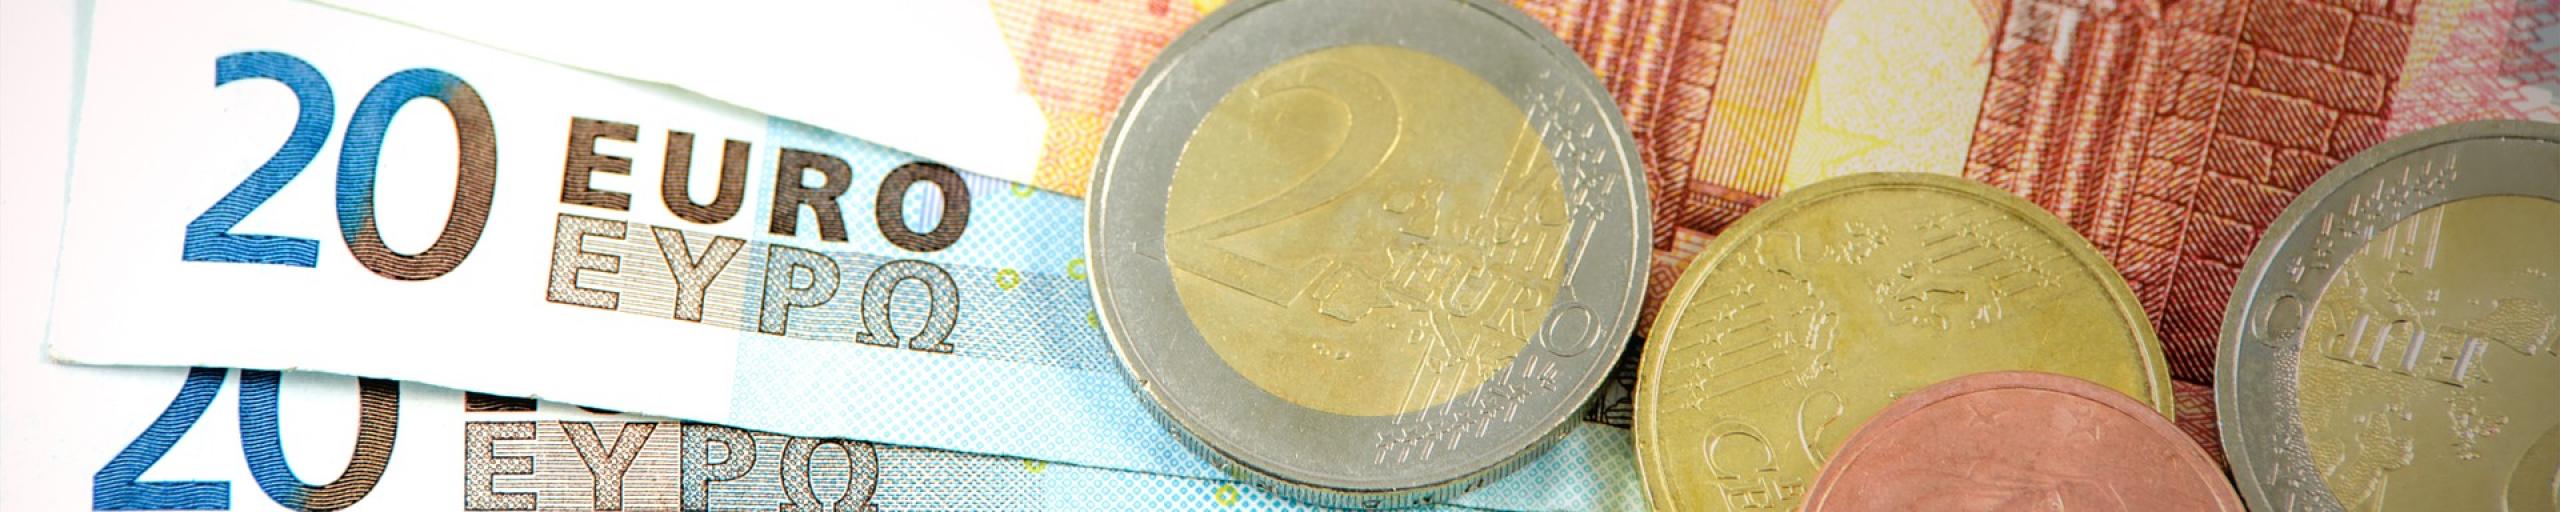 Afbeelding van papiergeld en euromunten